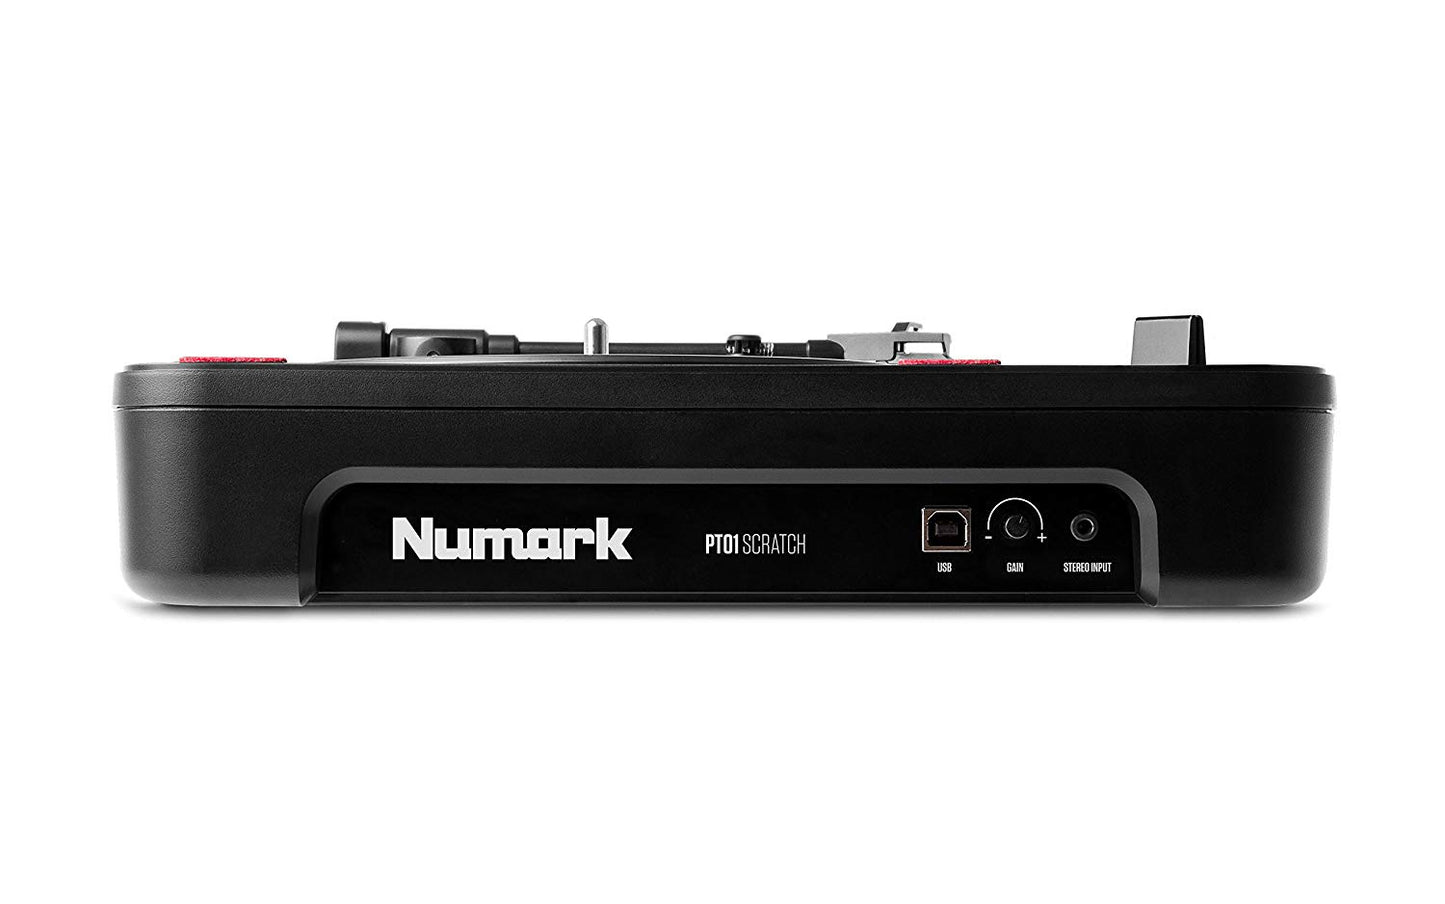 Numark PT101 Scratch Portable DJ Turntable